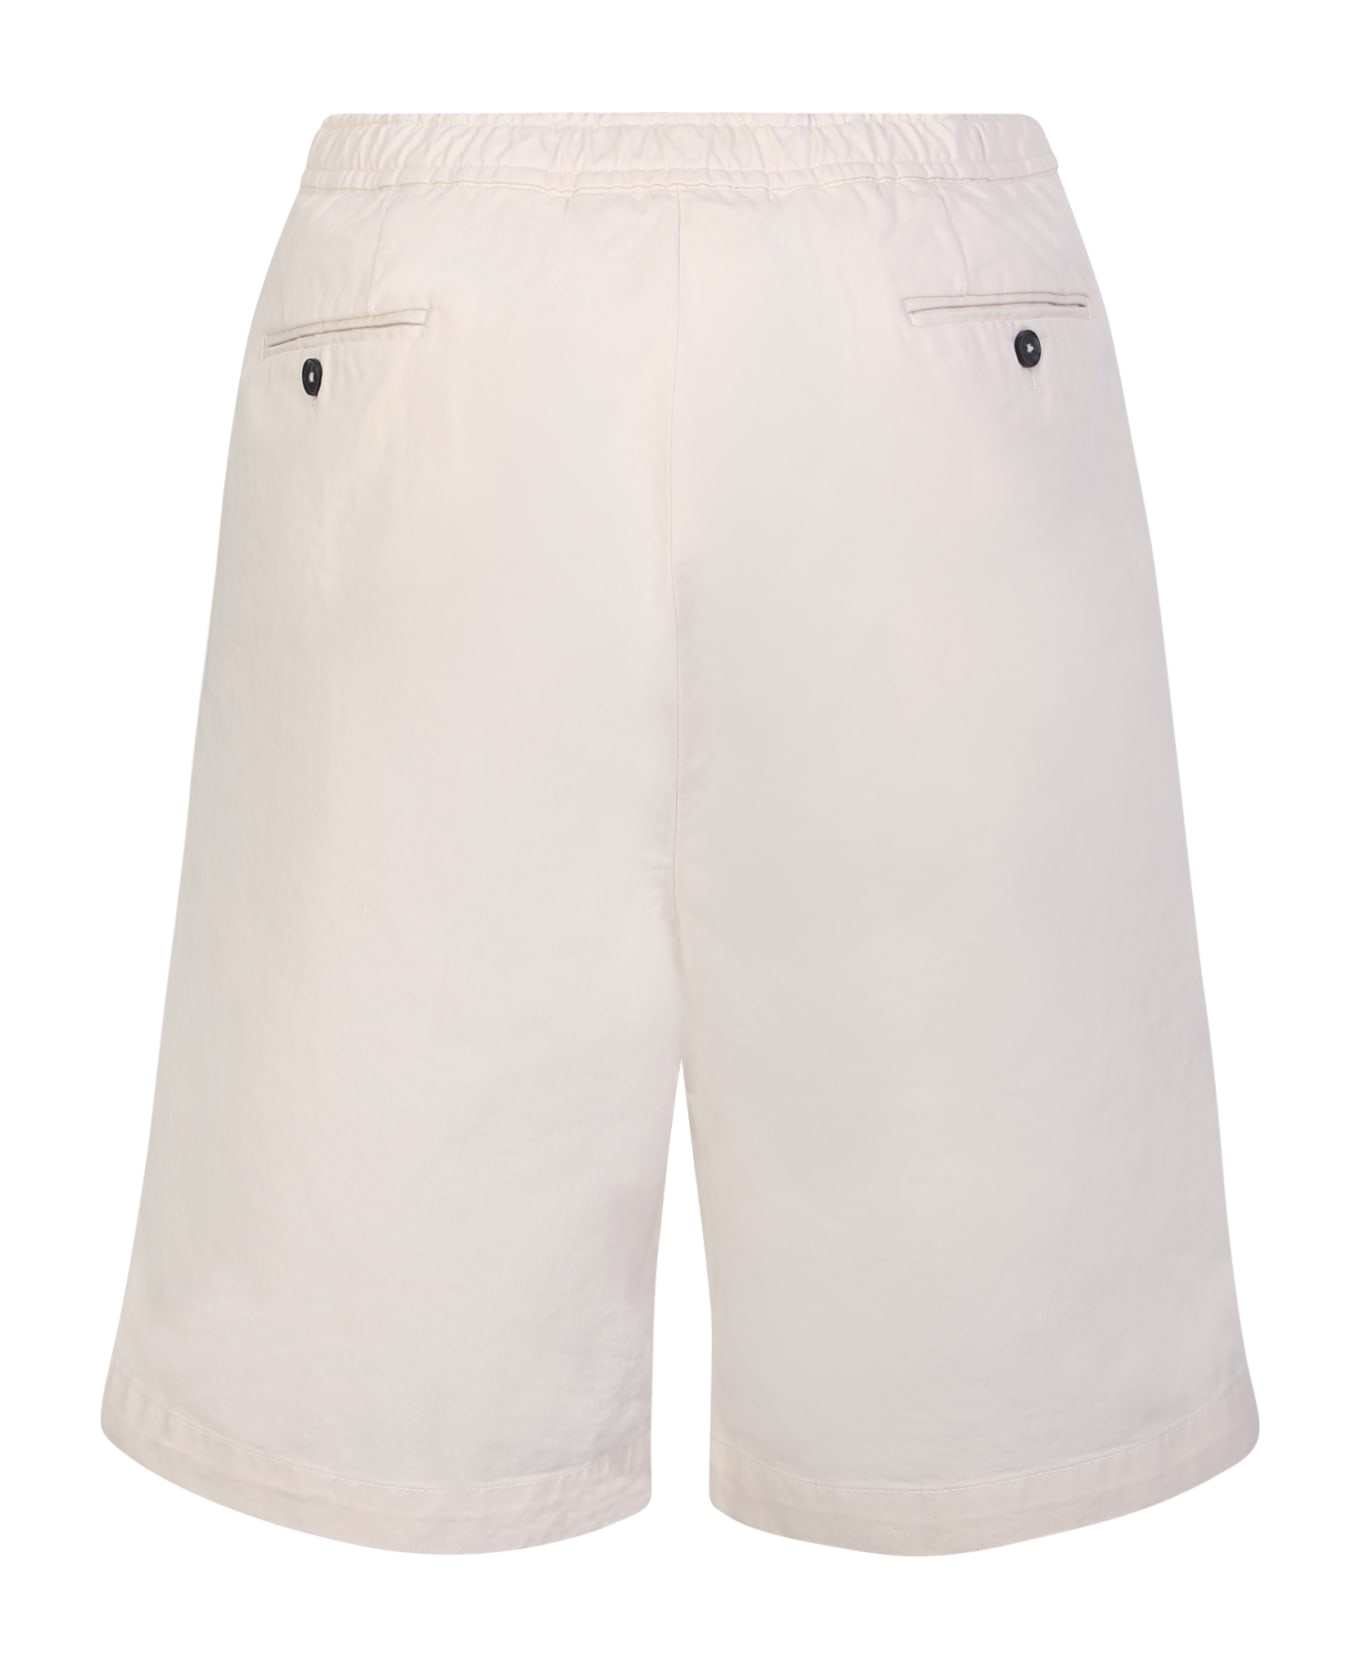 Officine Générale Light Beige Cotton Shorts - Beige